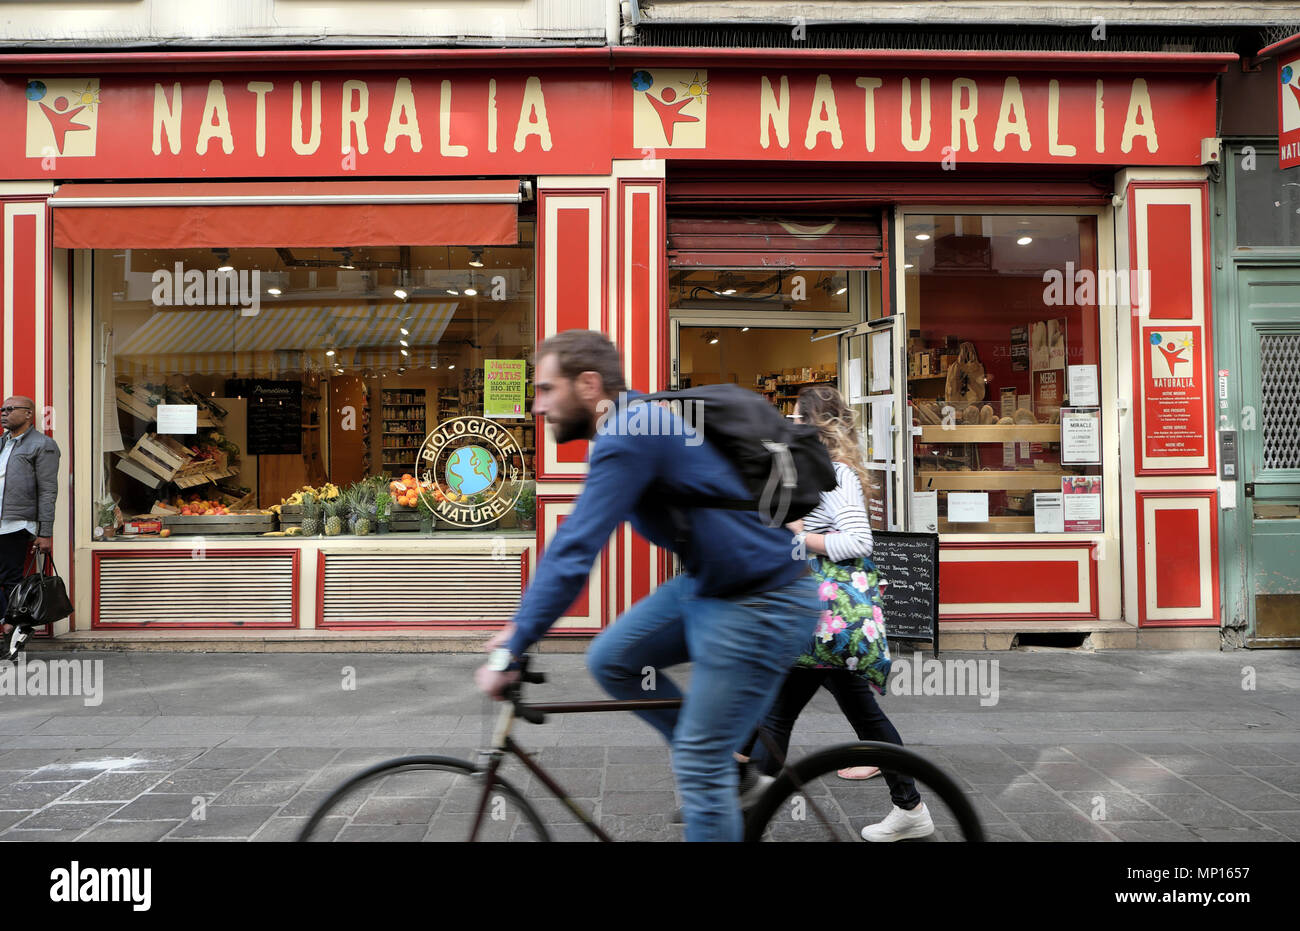 Mann auf dem Fahrrad Radfahren durch Naturalia Bioladen in der Rue Mouffetard Straße in der Nähe von Les Halles Paris Frankreich Europa KATHY DEWITT Stockfoto